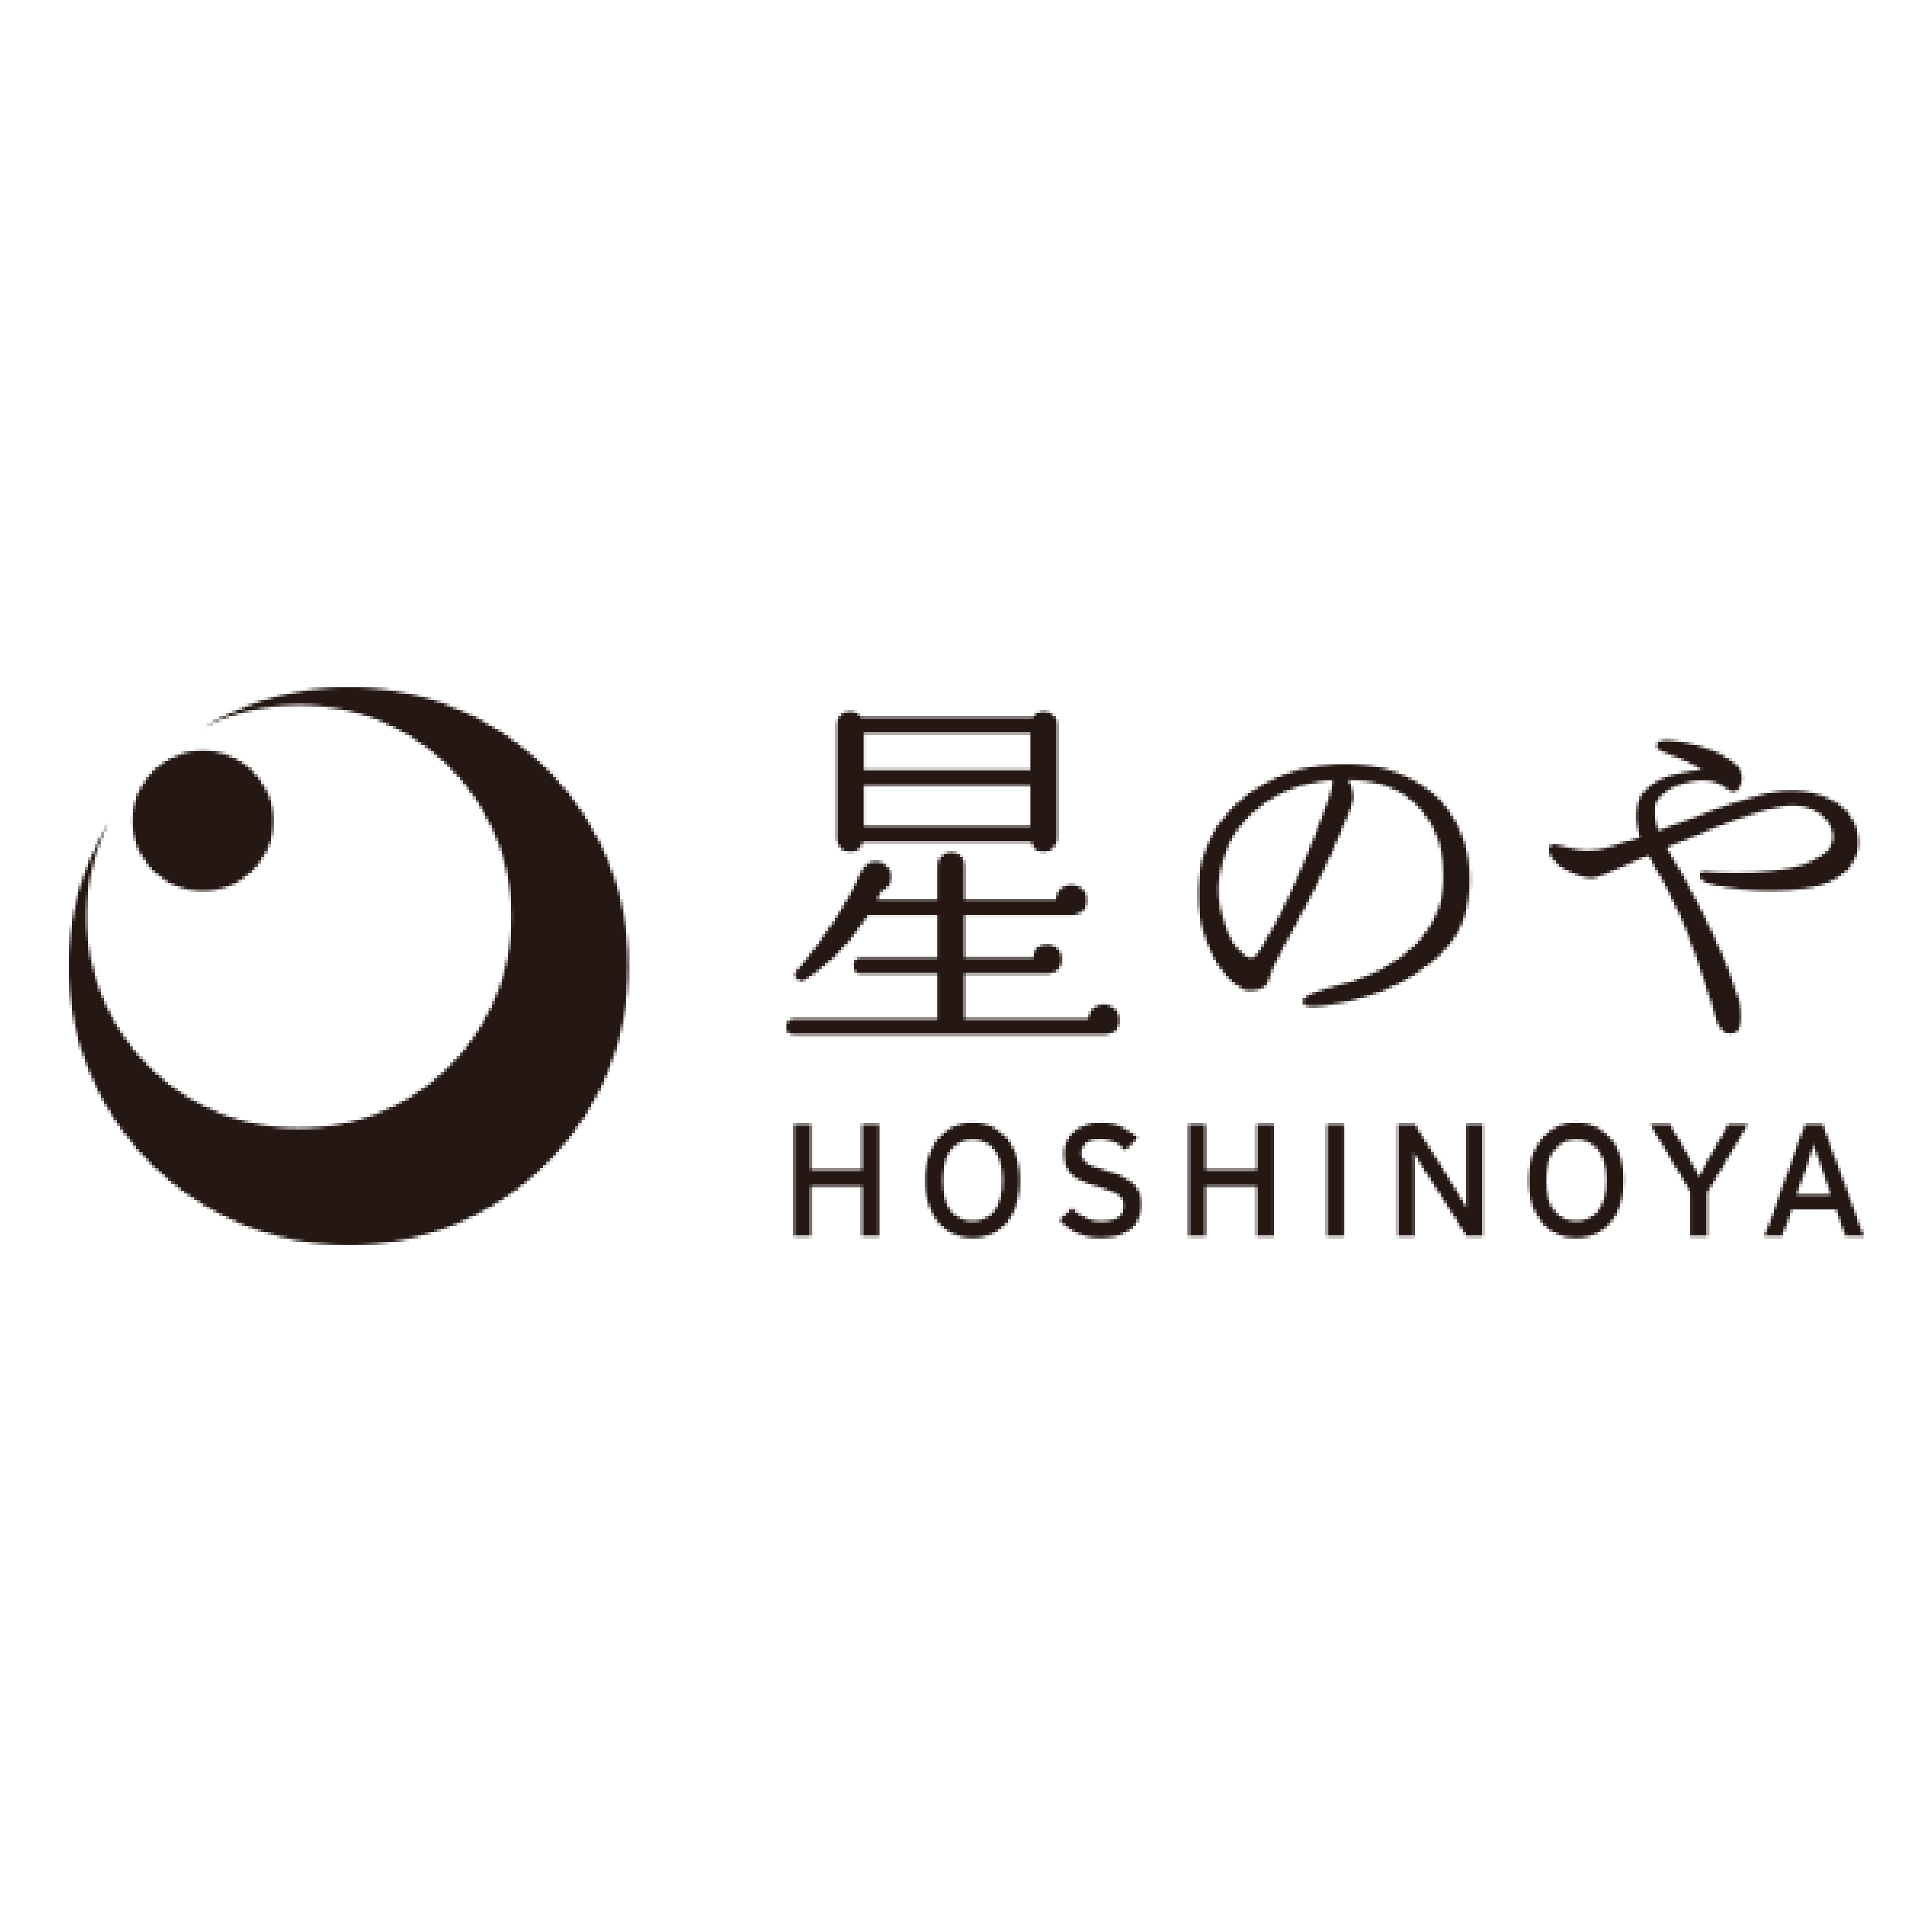 HOSHINOYA